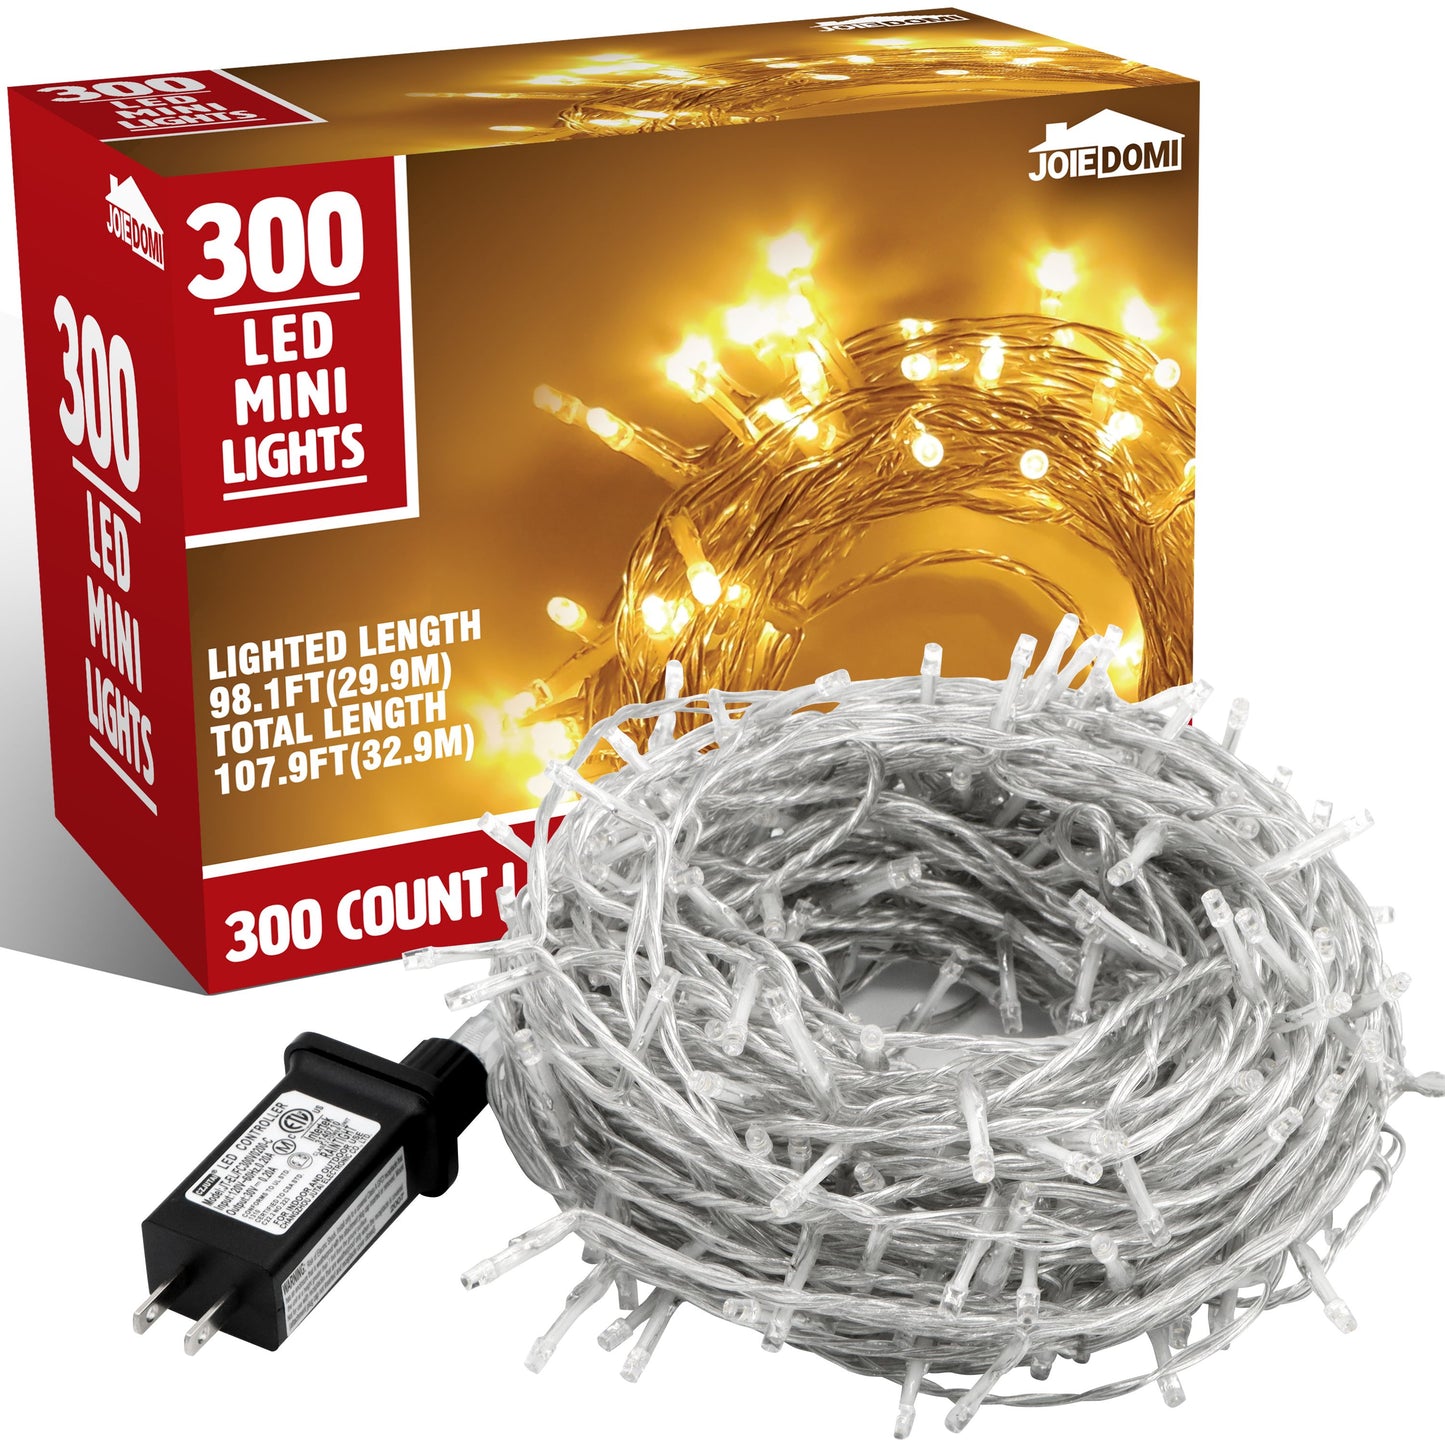 300 Count LED Warm Christmas Lights